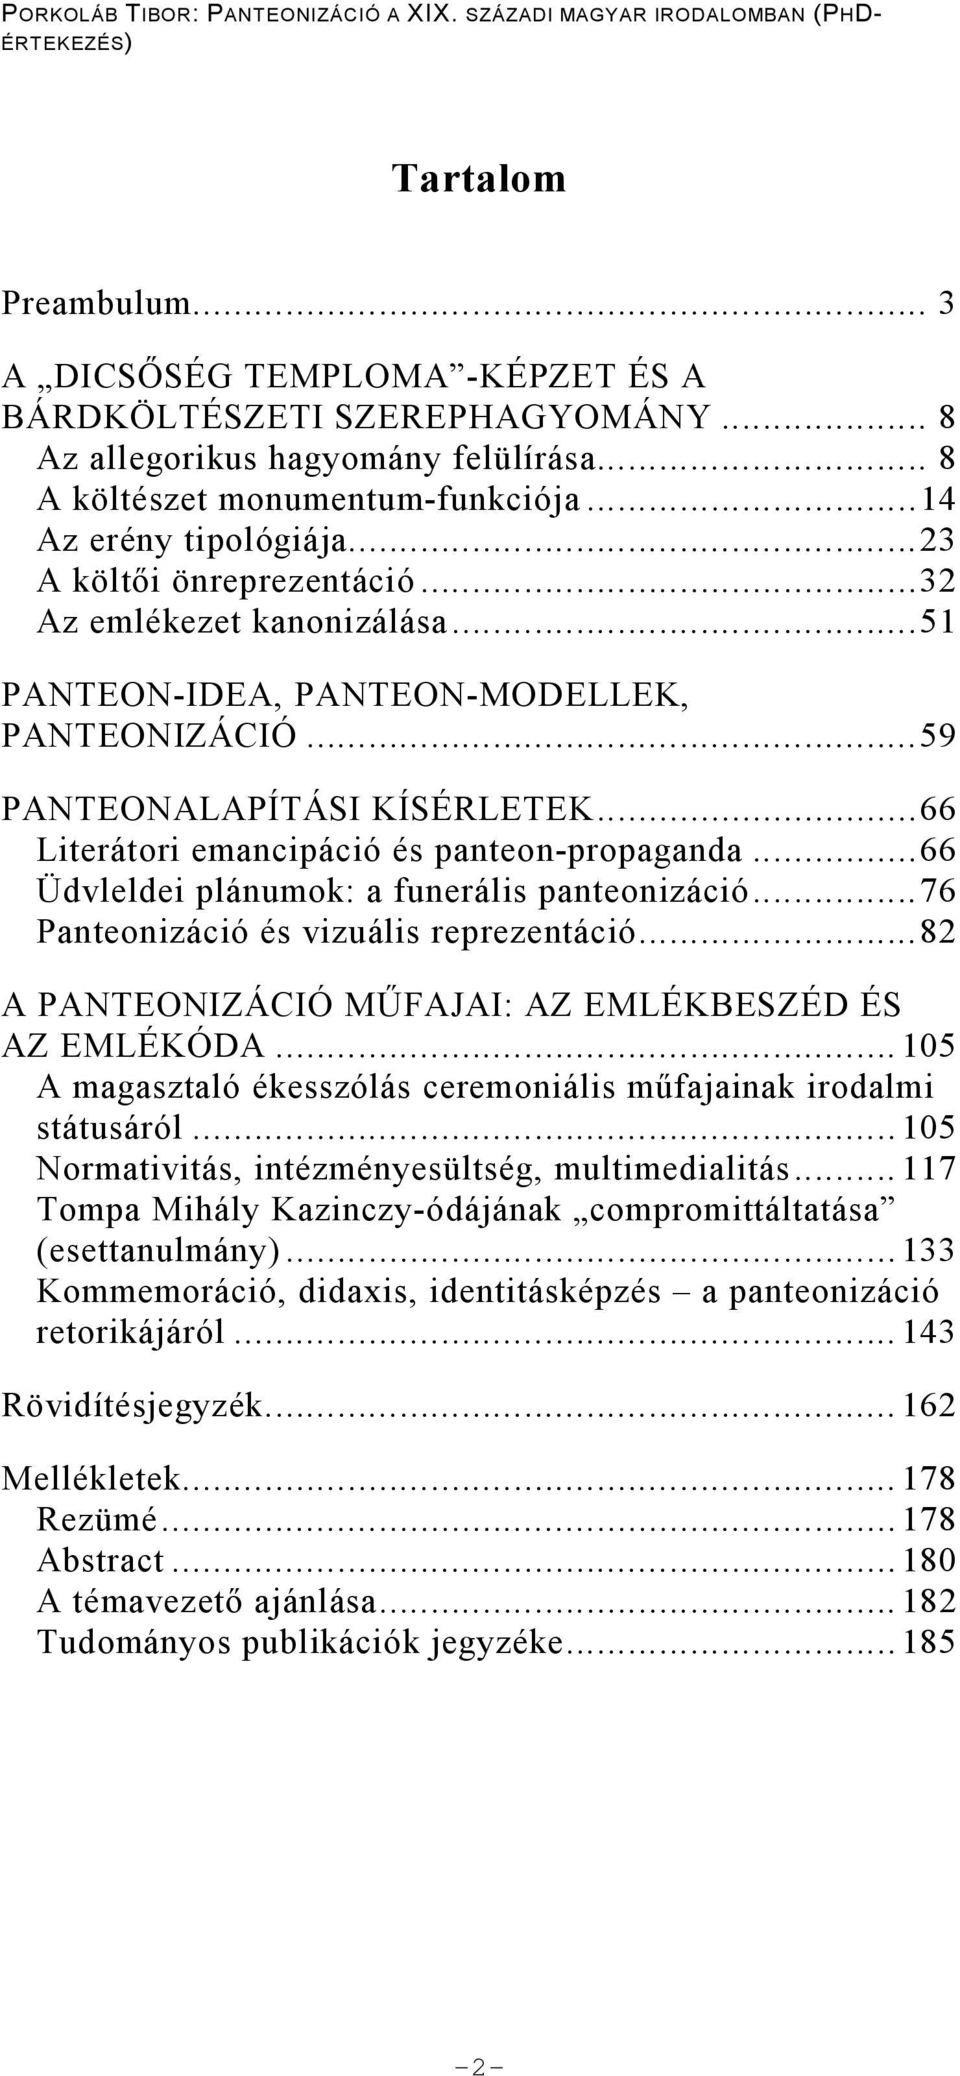 ..66 Üdvleldei plánumok: a funerális panteonizáció...76 Panteonizáció és vizuális reprezentáció...82 A PANTEONIZÁCIÓ M FAJAI: AZ EMLÉKBESZÉD ÉS AZ EMLÉKÓDA.